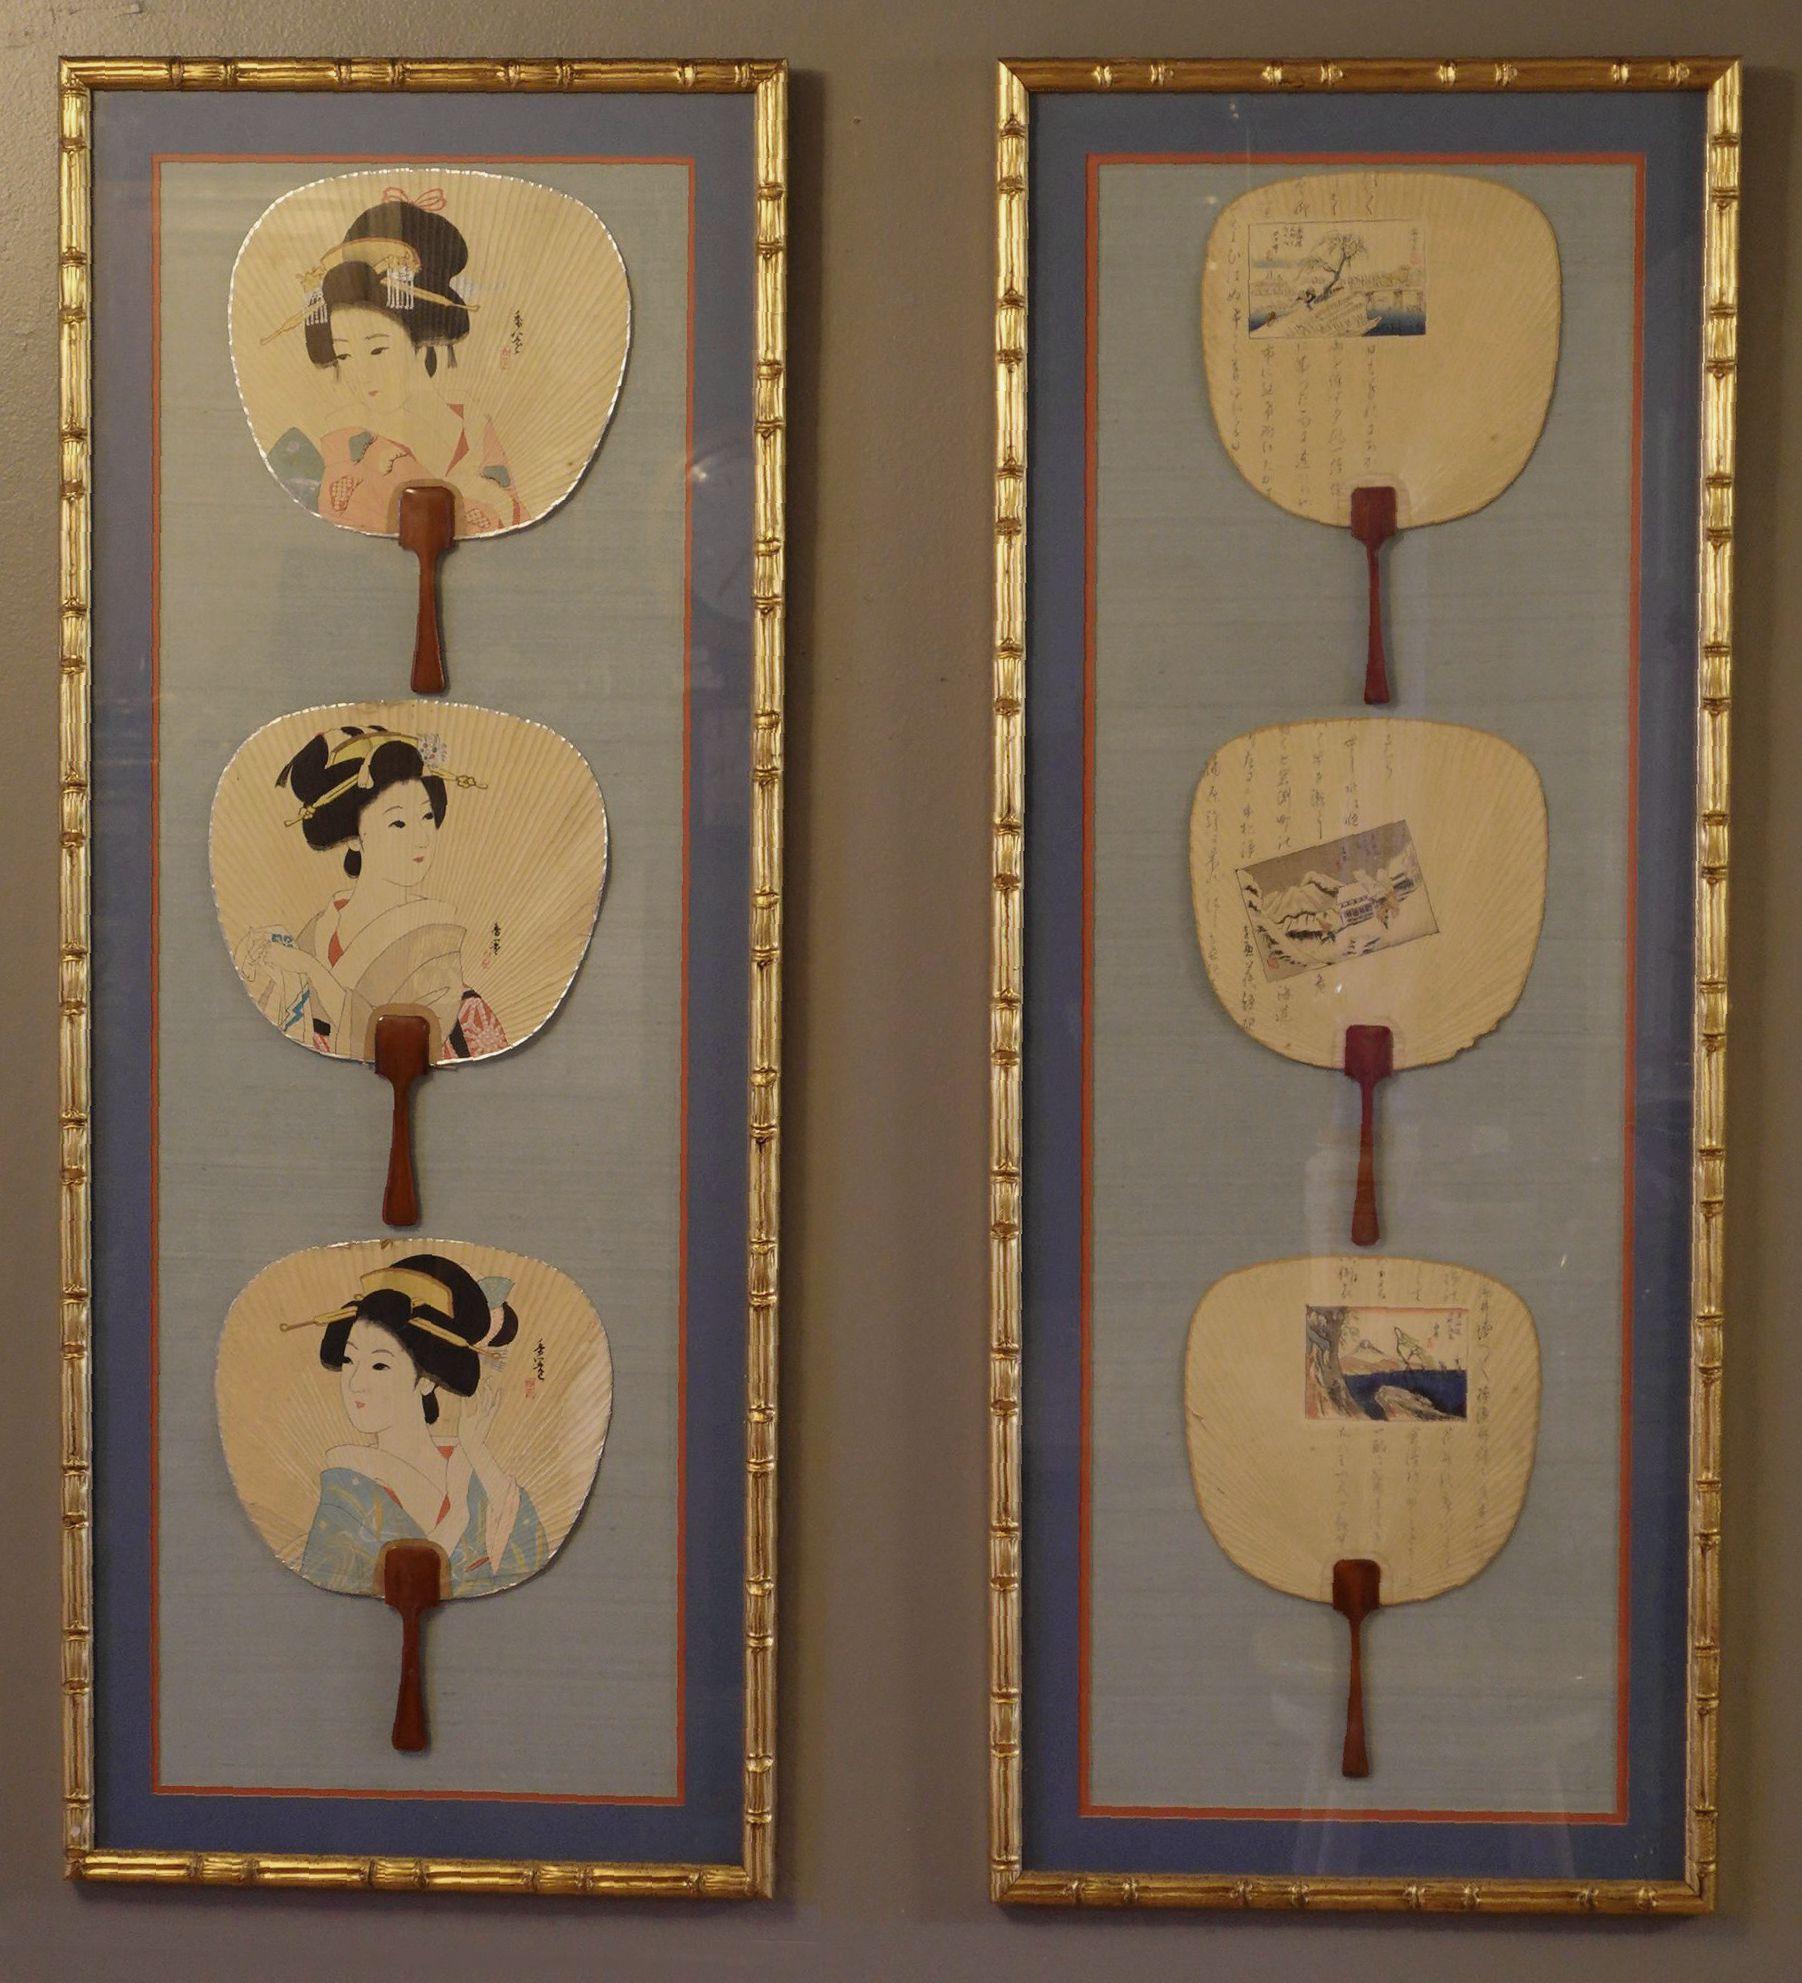 Anciens éventails en soie japonais encadrés du 19e siècle comprenant deux éventails en soie japonais joliment encadrés, un groupe avec 3 Geishas, l'autre scénique avec 3 inscriptions avec 3 peintures d'Utagawa Hiroshige, contenus dans un cadre glacé